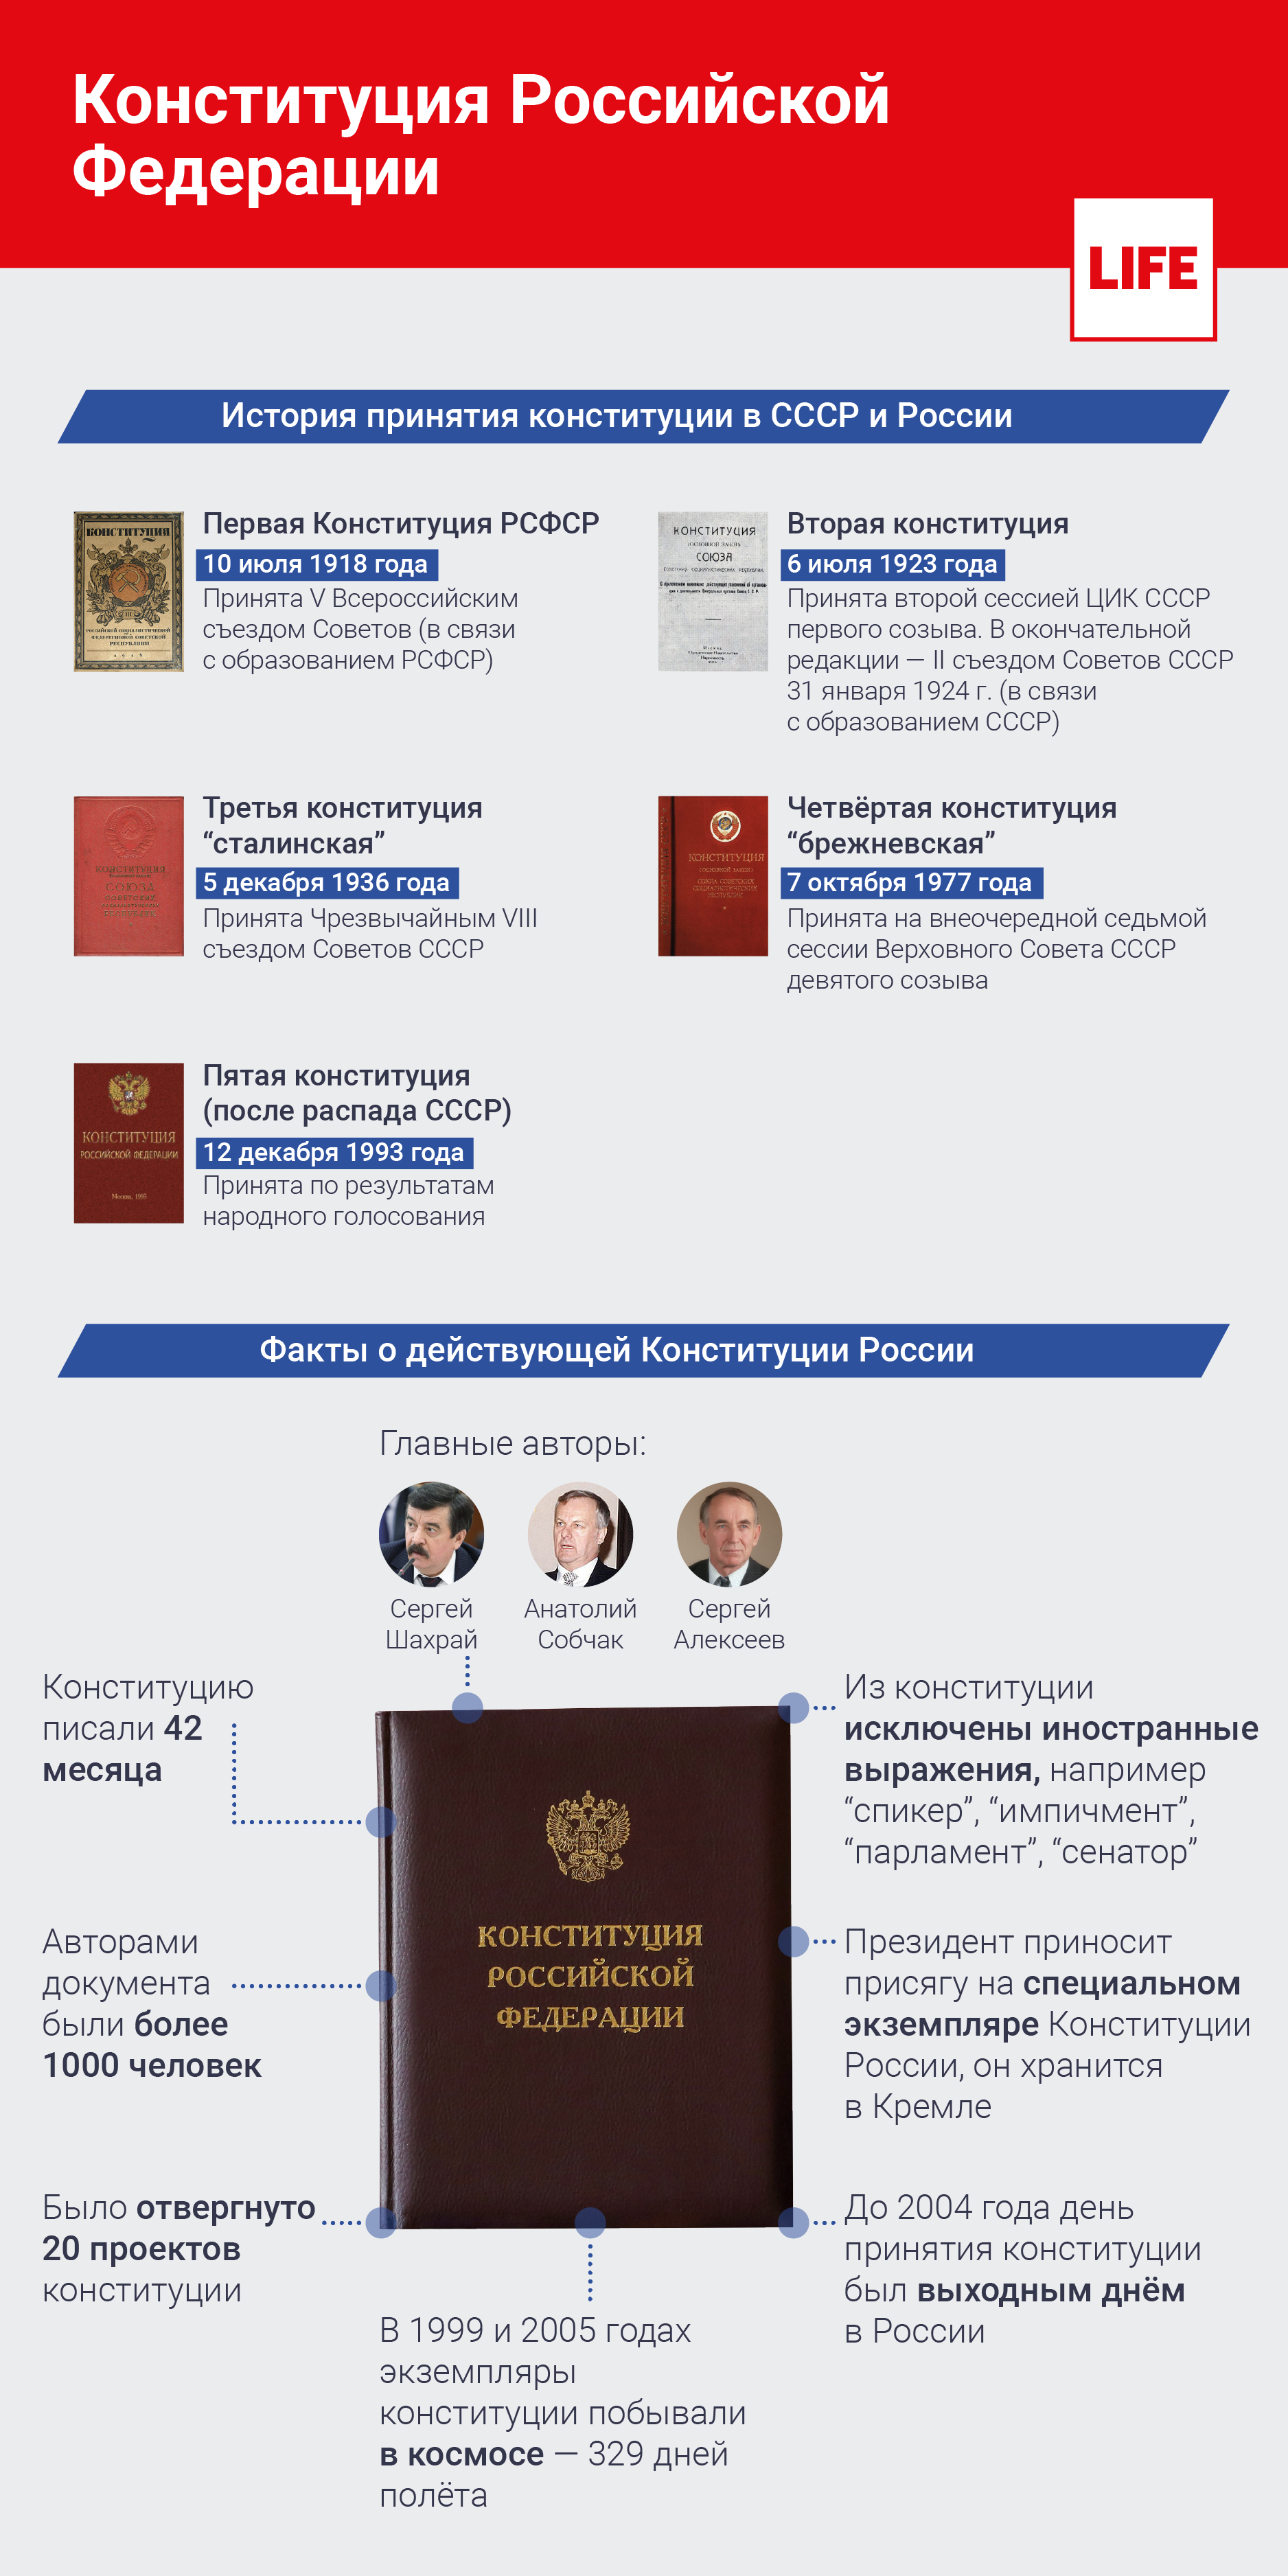 История принятия конституции в СССР и России. Инфографика © LIFE 